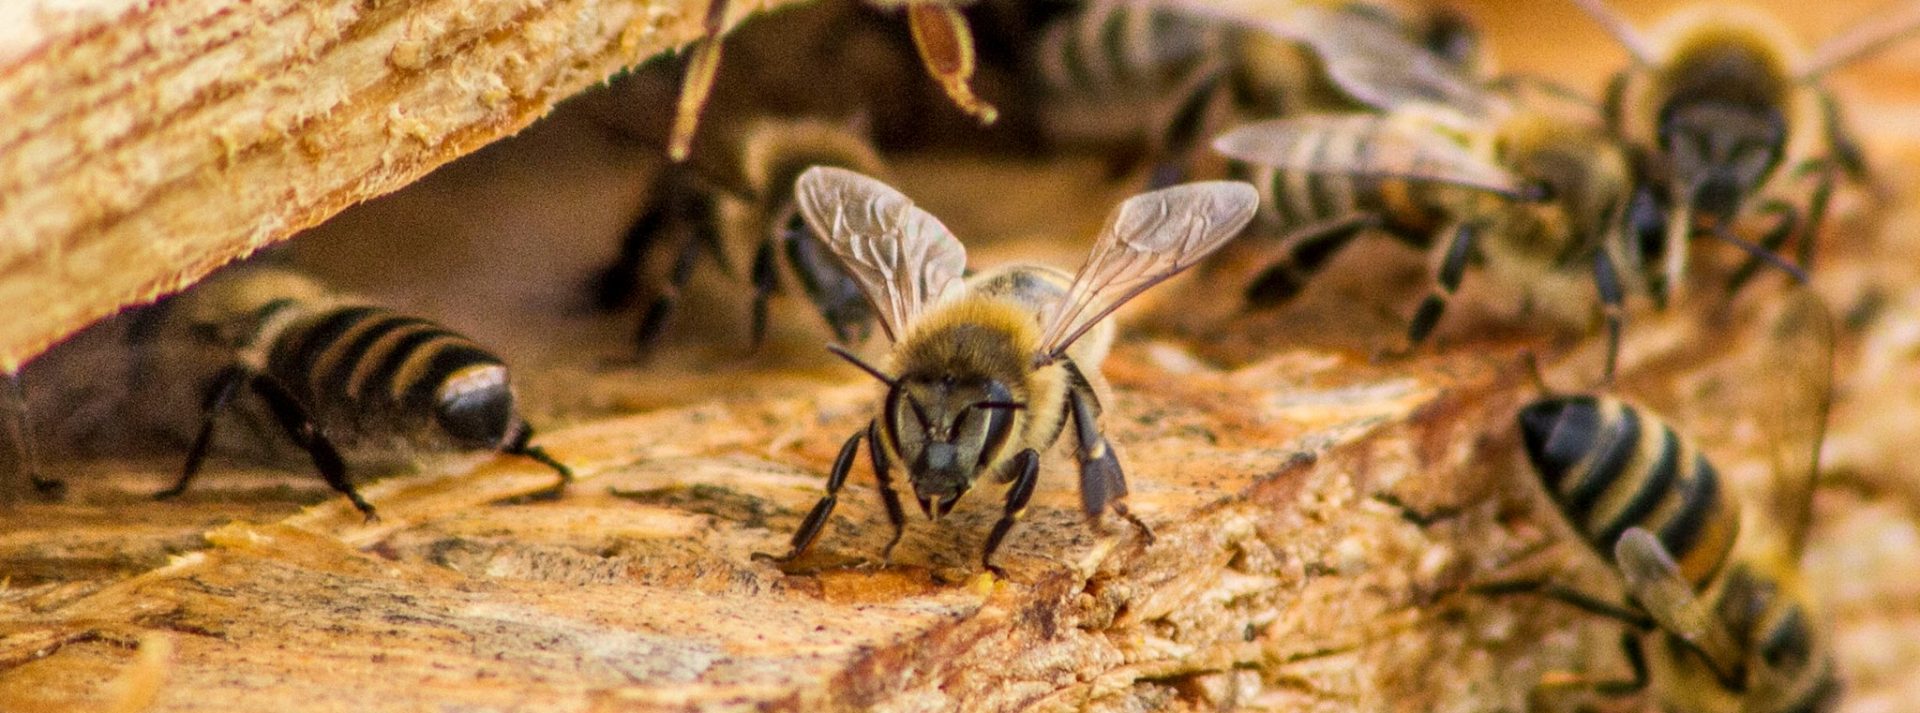 Lekcja o pszczołach i o pszczelarstwie? Czemu nie!